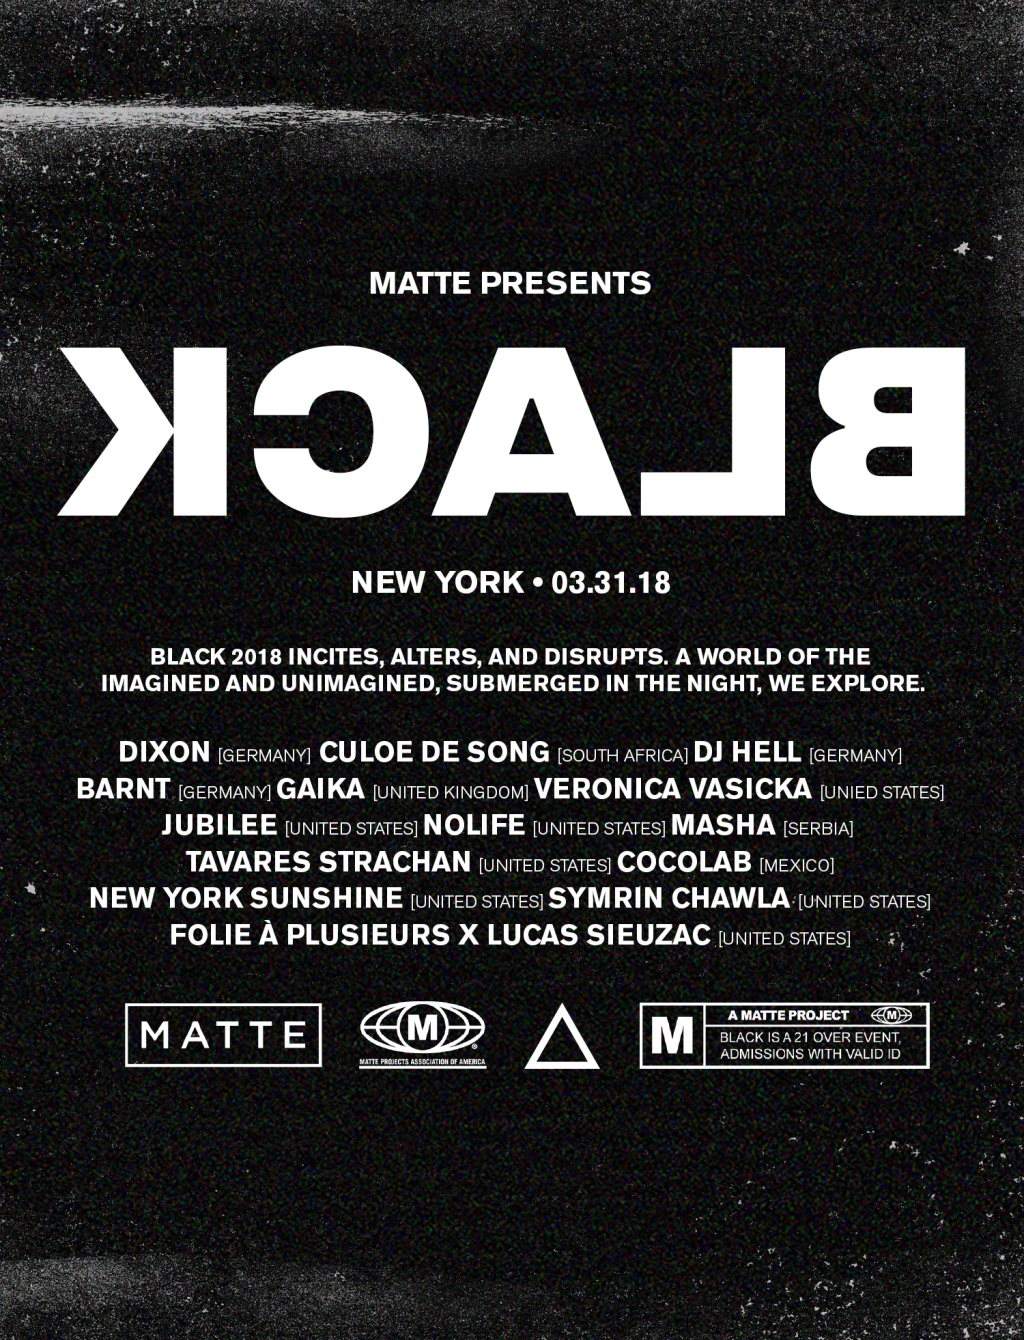 BLACK NYC - Dixon / Culoe De Song / DJ Hell / Veronica Vasicka - Página frontal